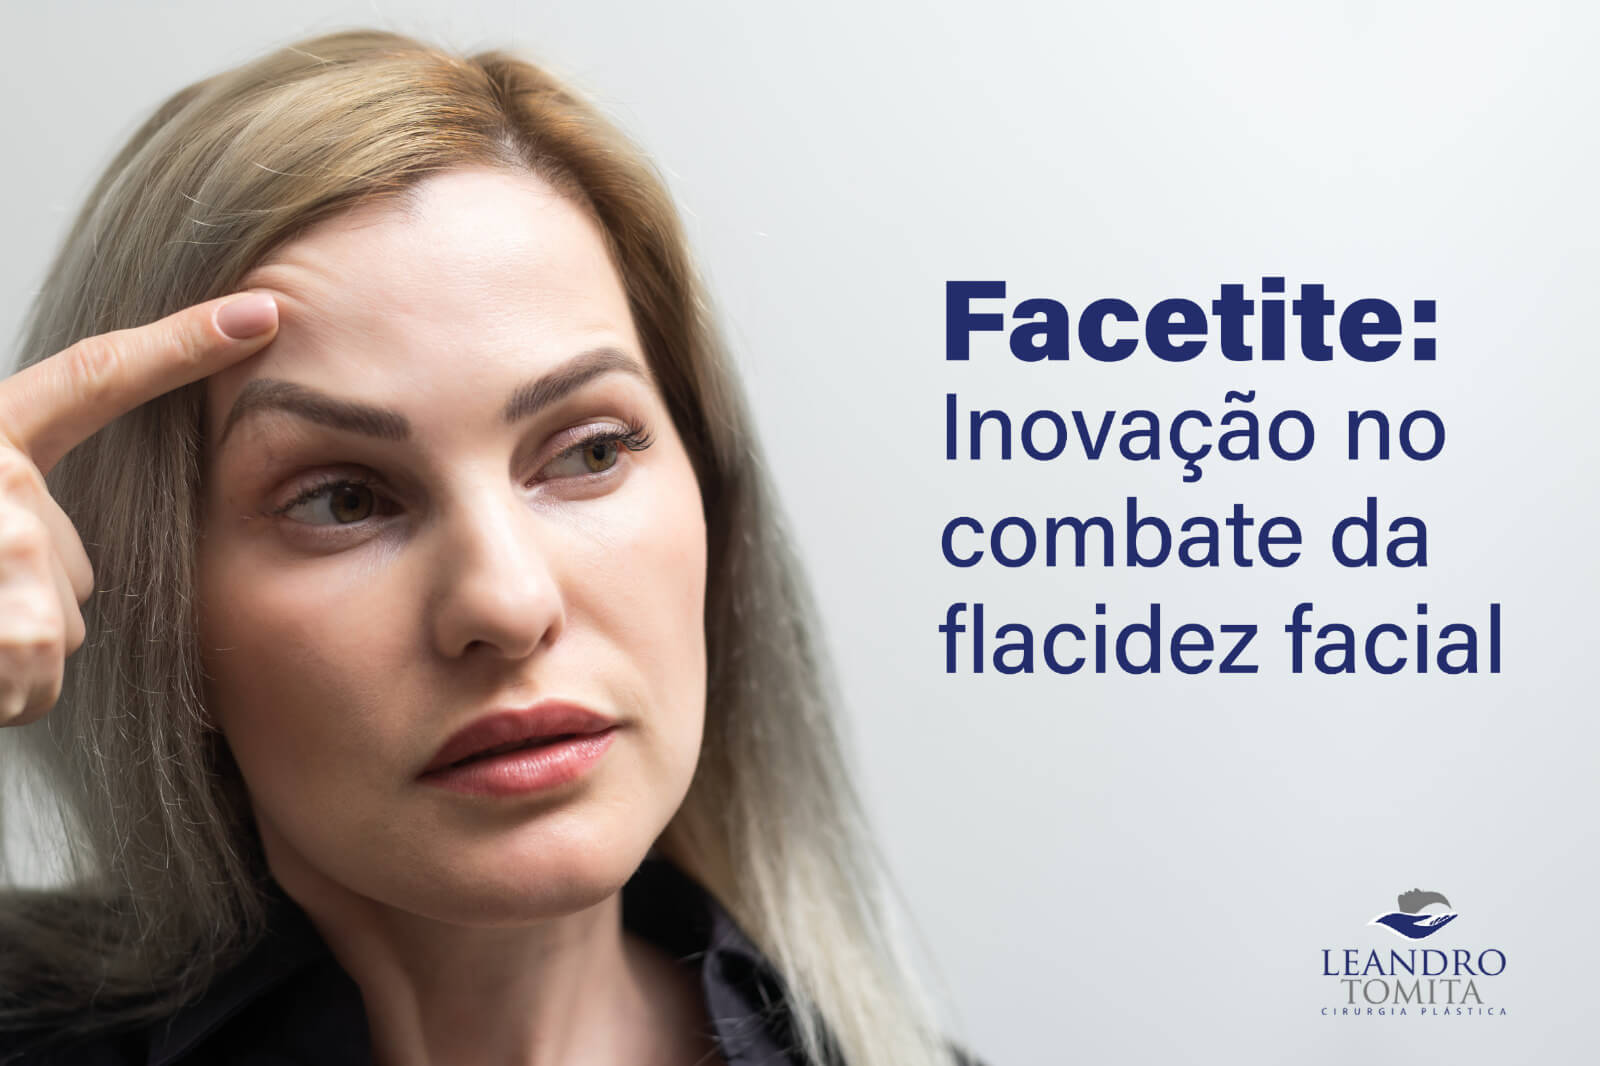 Facetite: Inovação no combate da flacidez facial